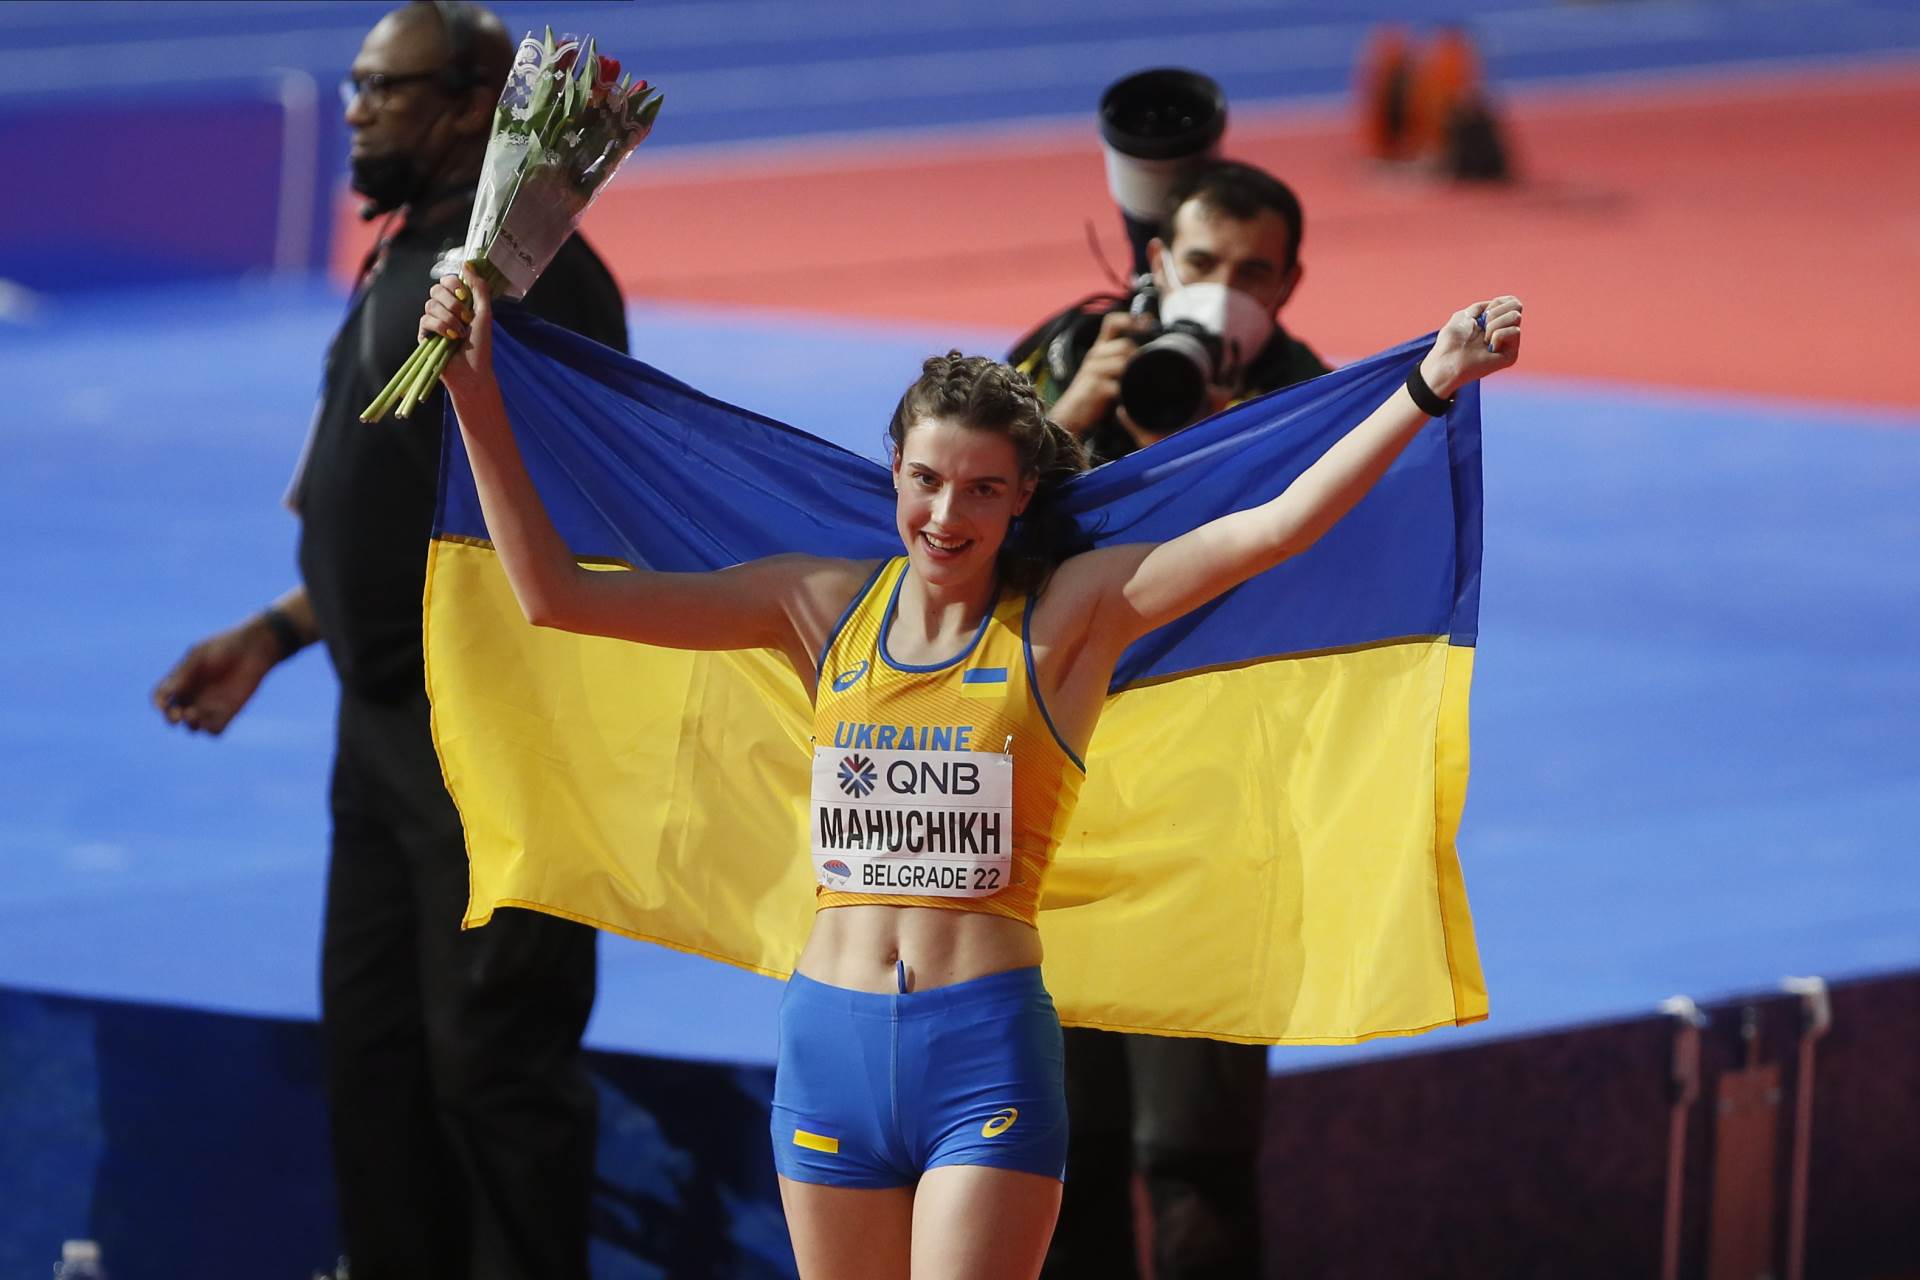  ukrajinska atletičarka posvetila zlatnu medalju svom narodu 